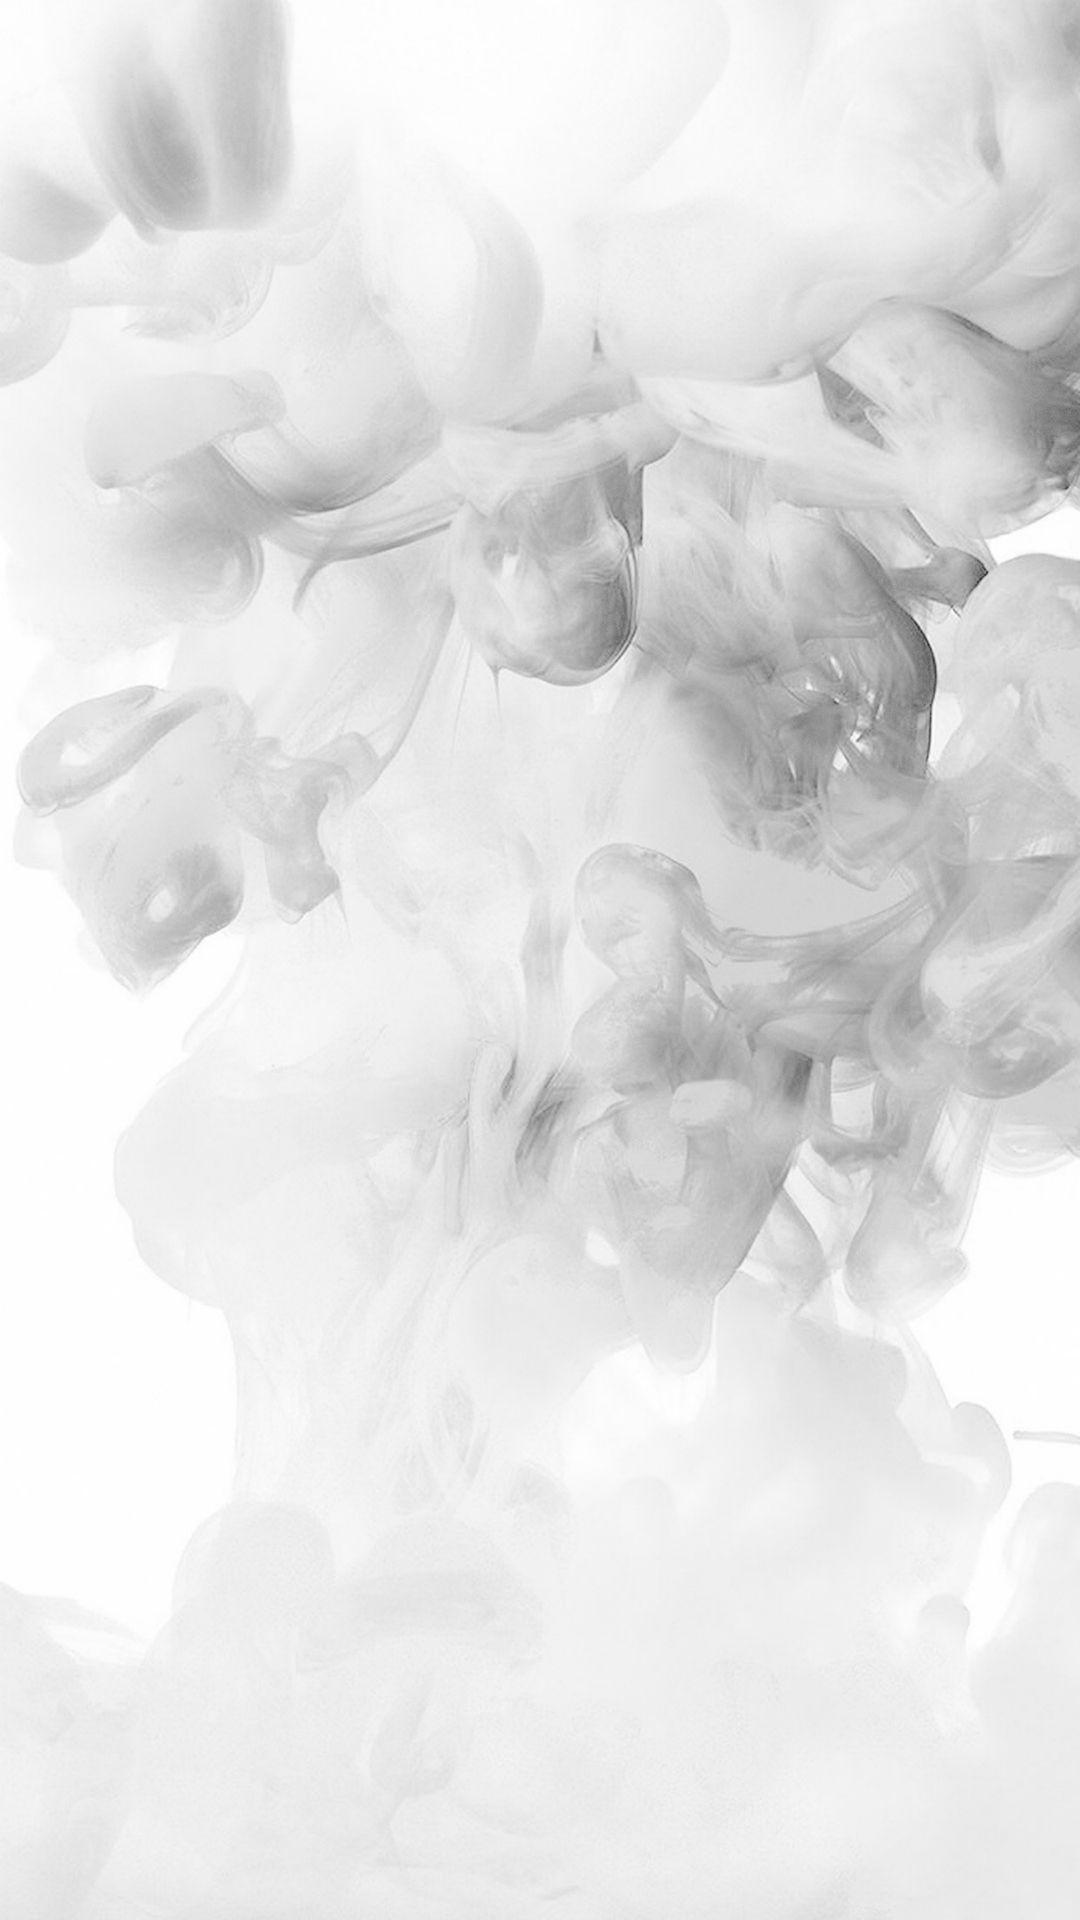 Smoke White Abstract Fog Art Illust iPhone 6 wallpaper. fog